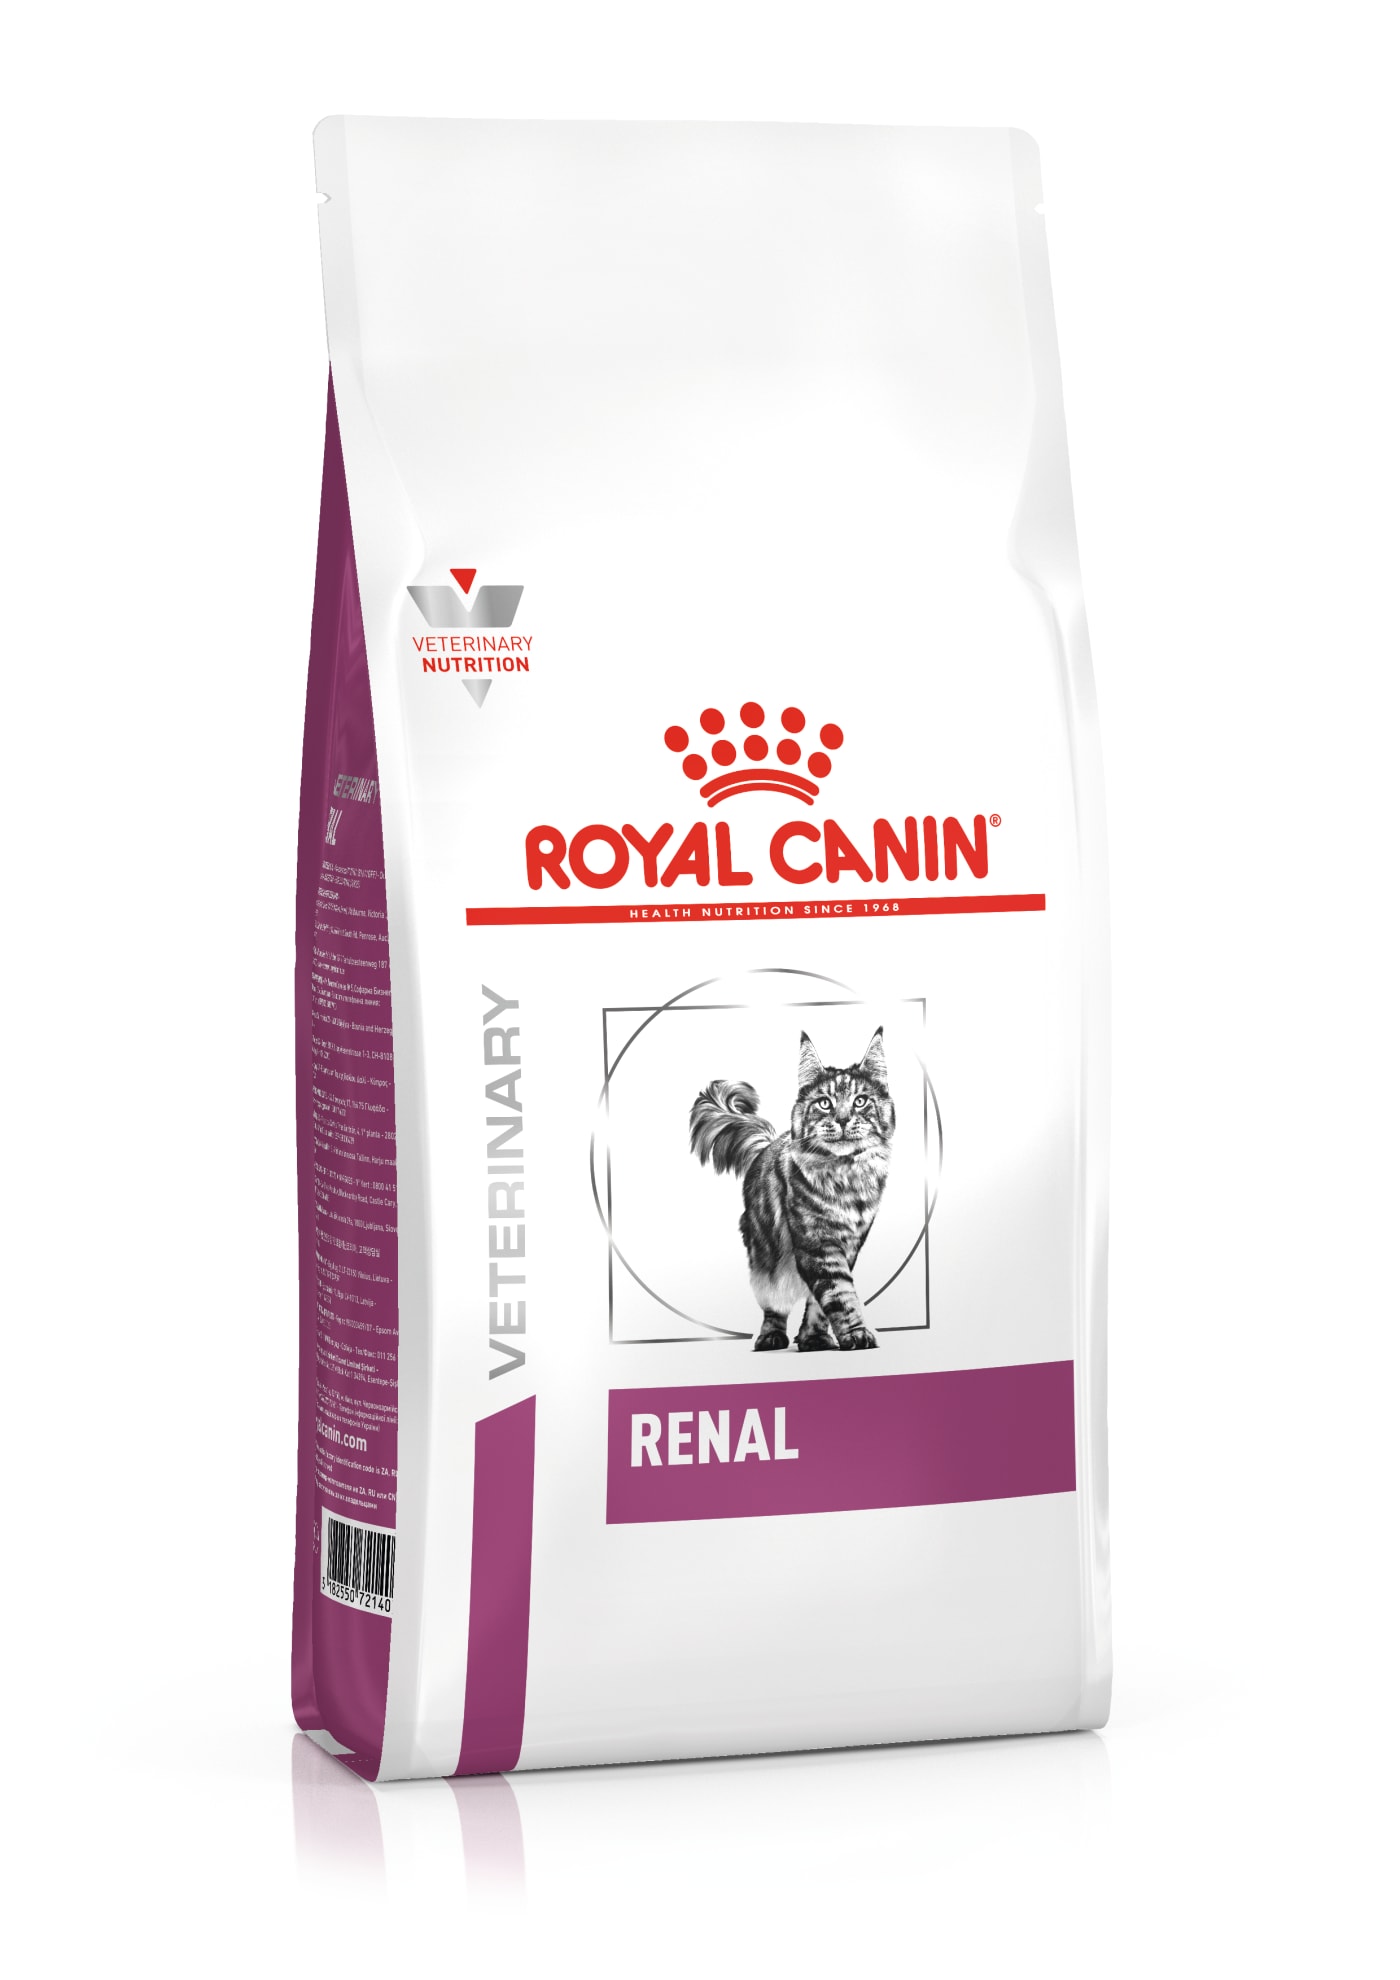 Royal canin feline renal